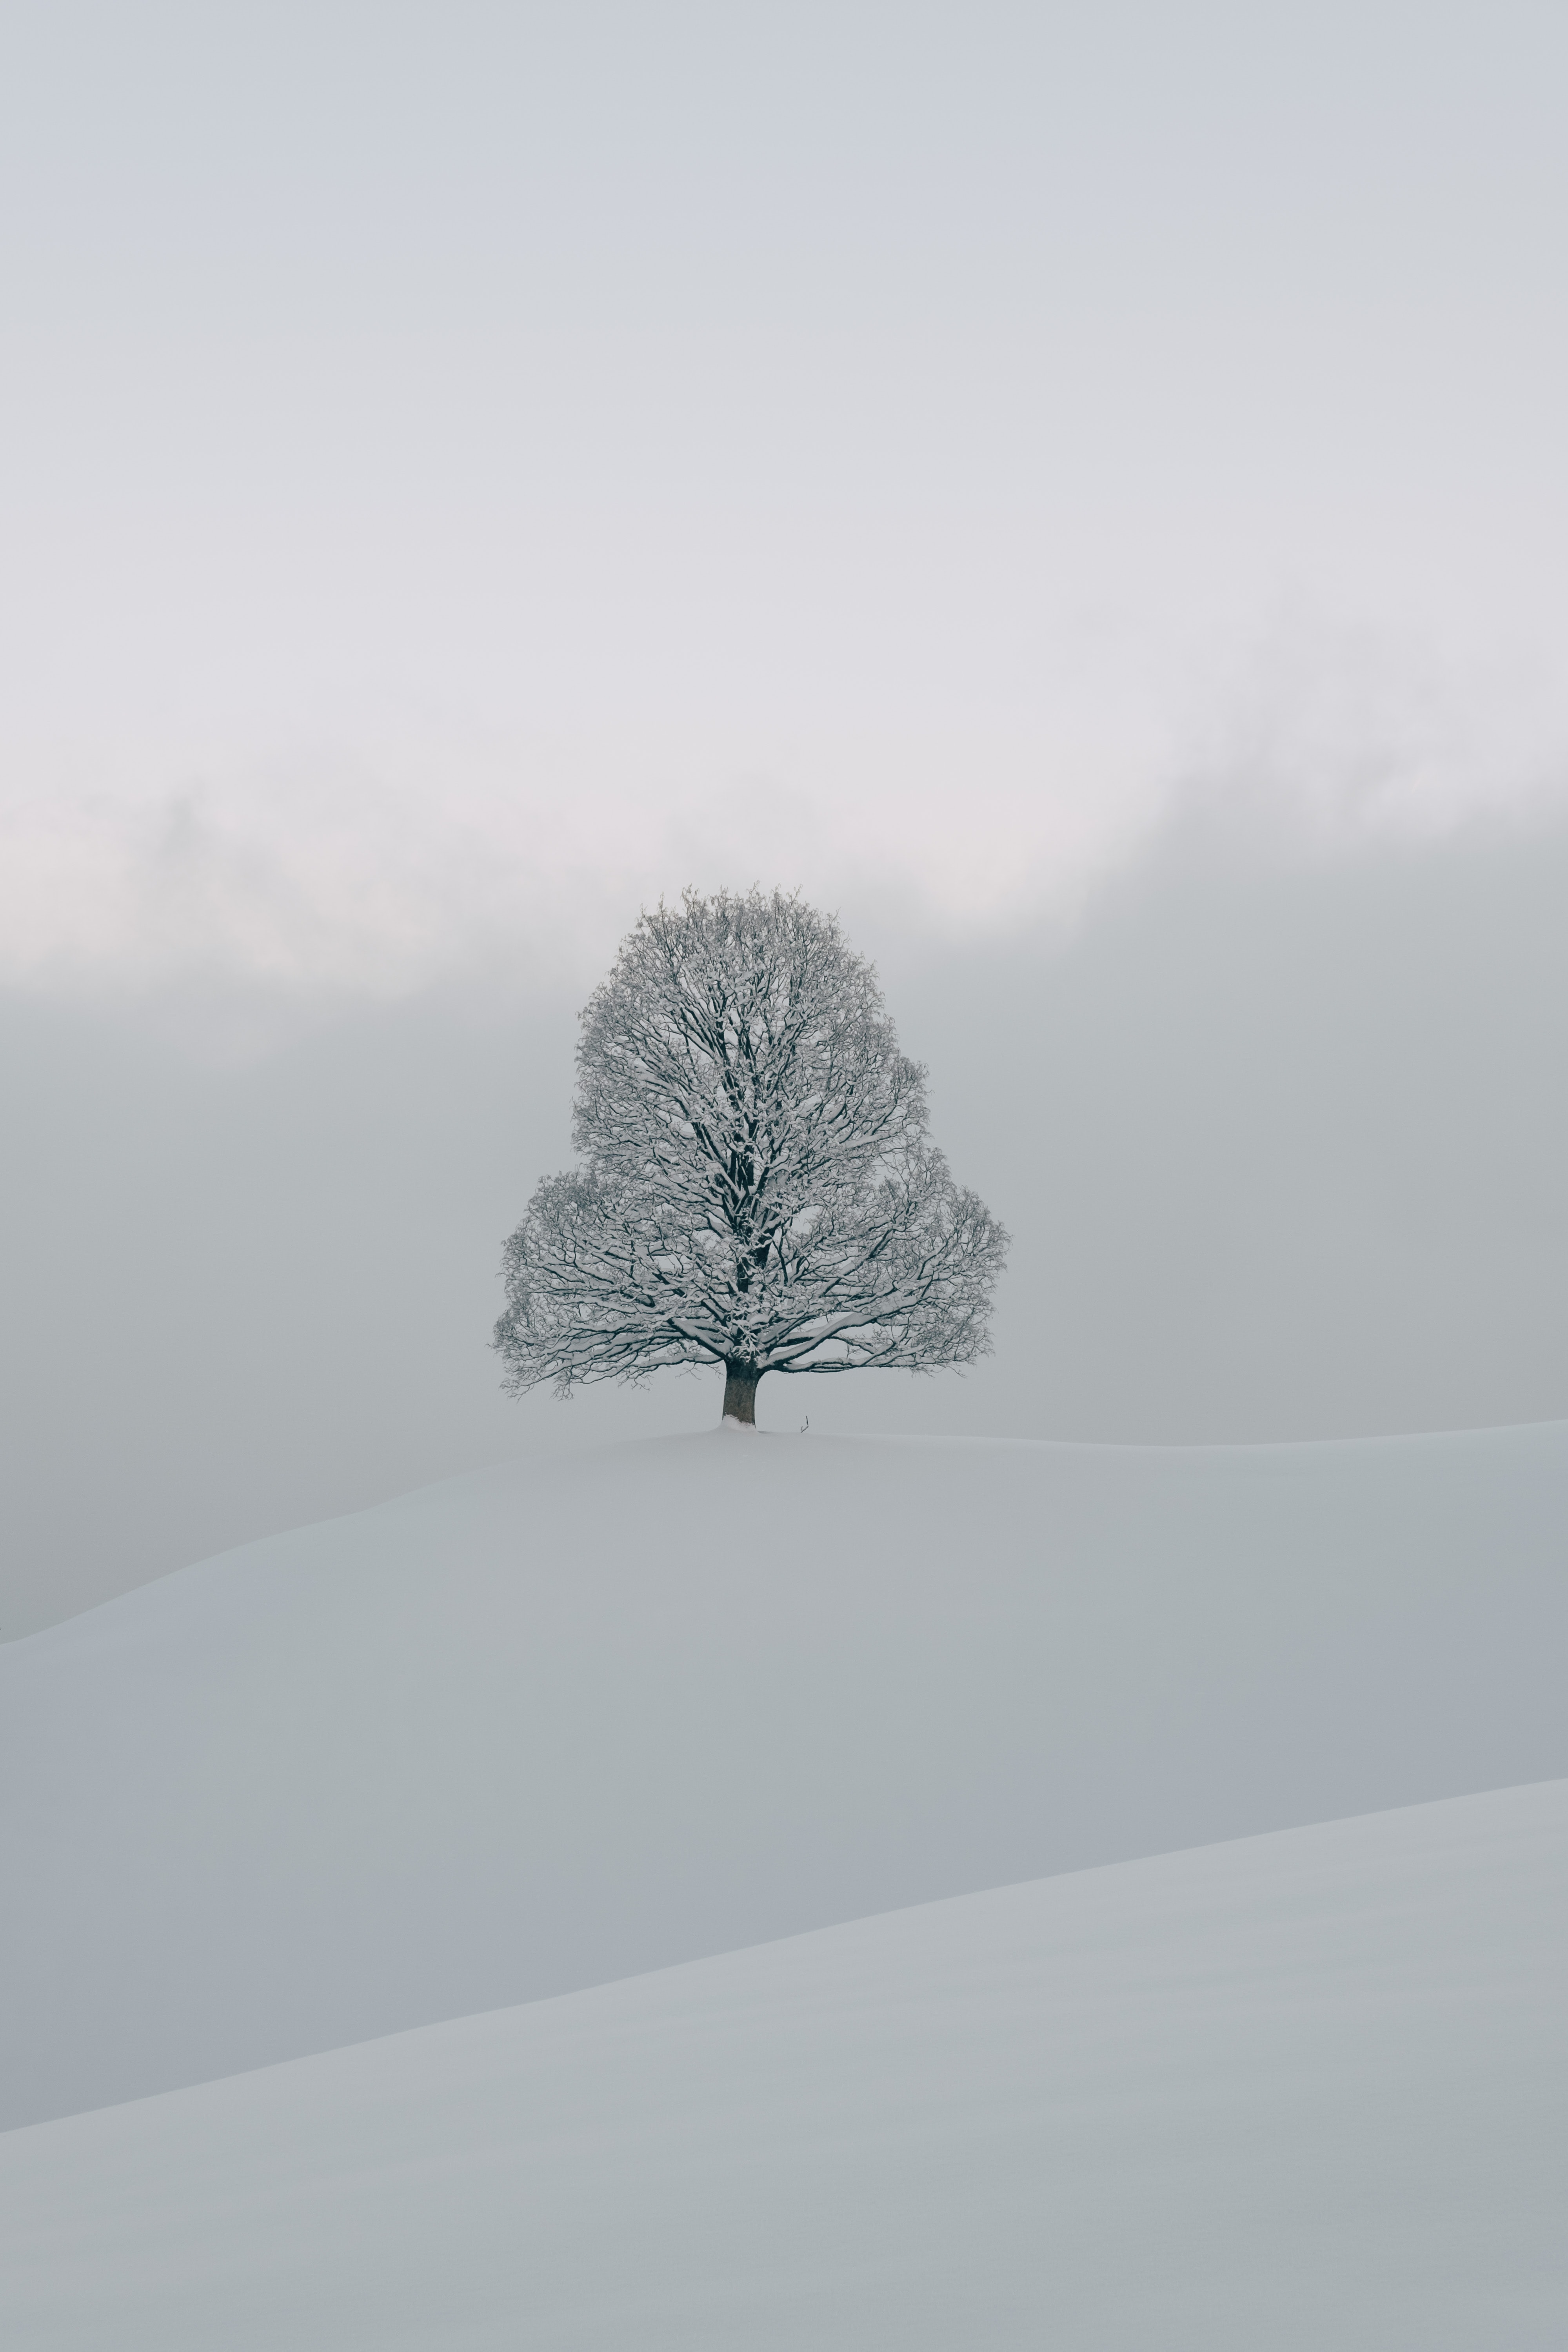 Скачать обои бесплатно Природа, Дерево, Белый, Снег, Зима картинка на рабочий стол ПК